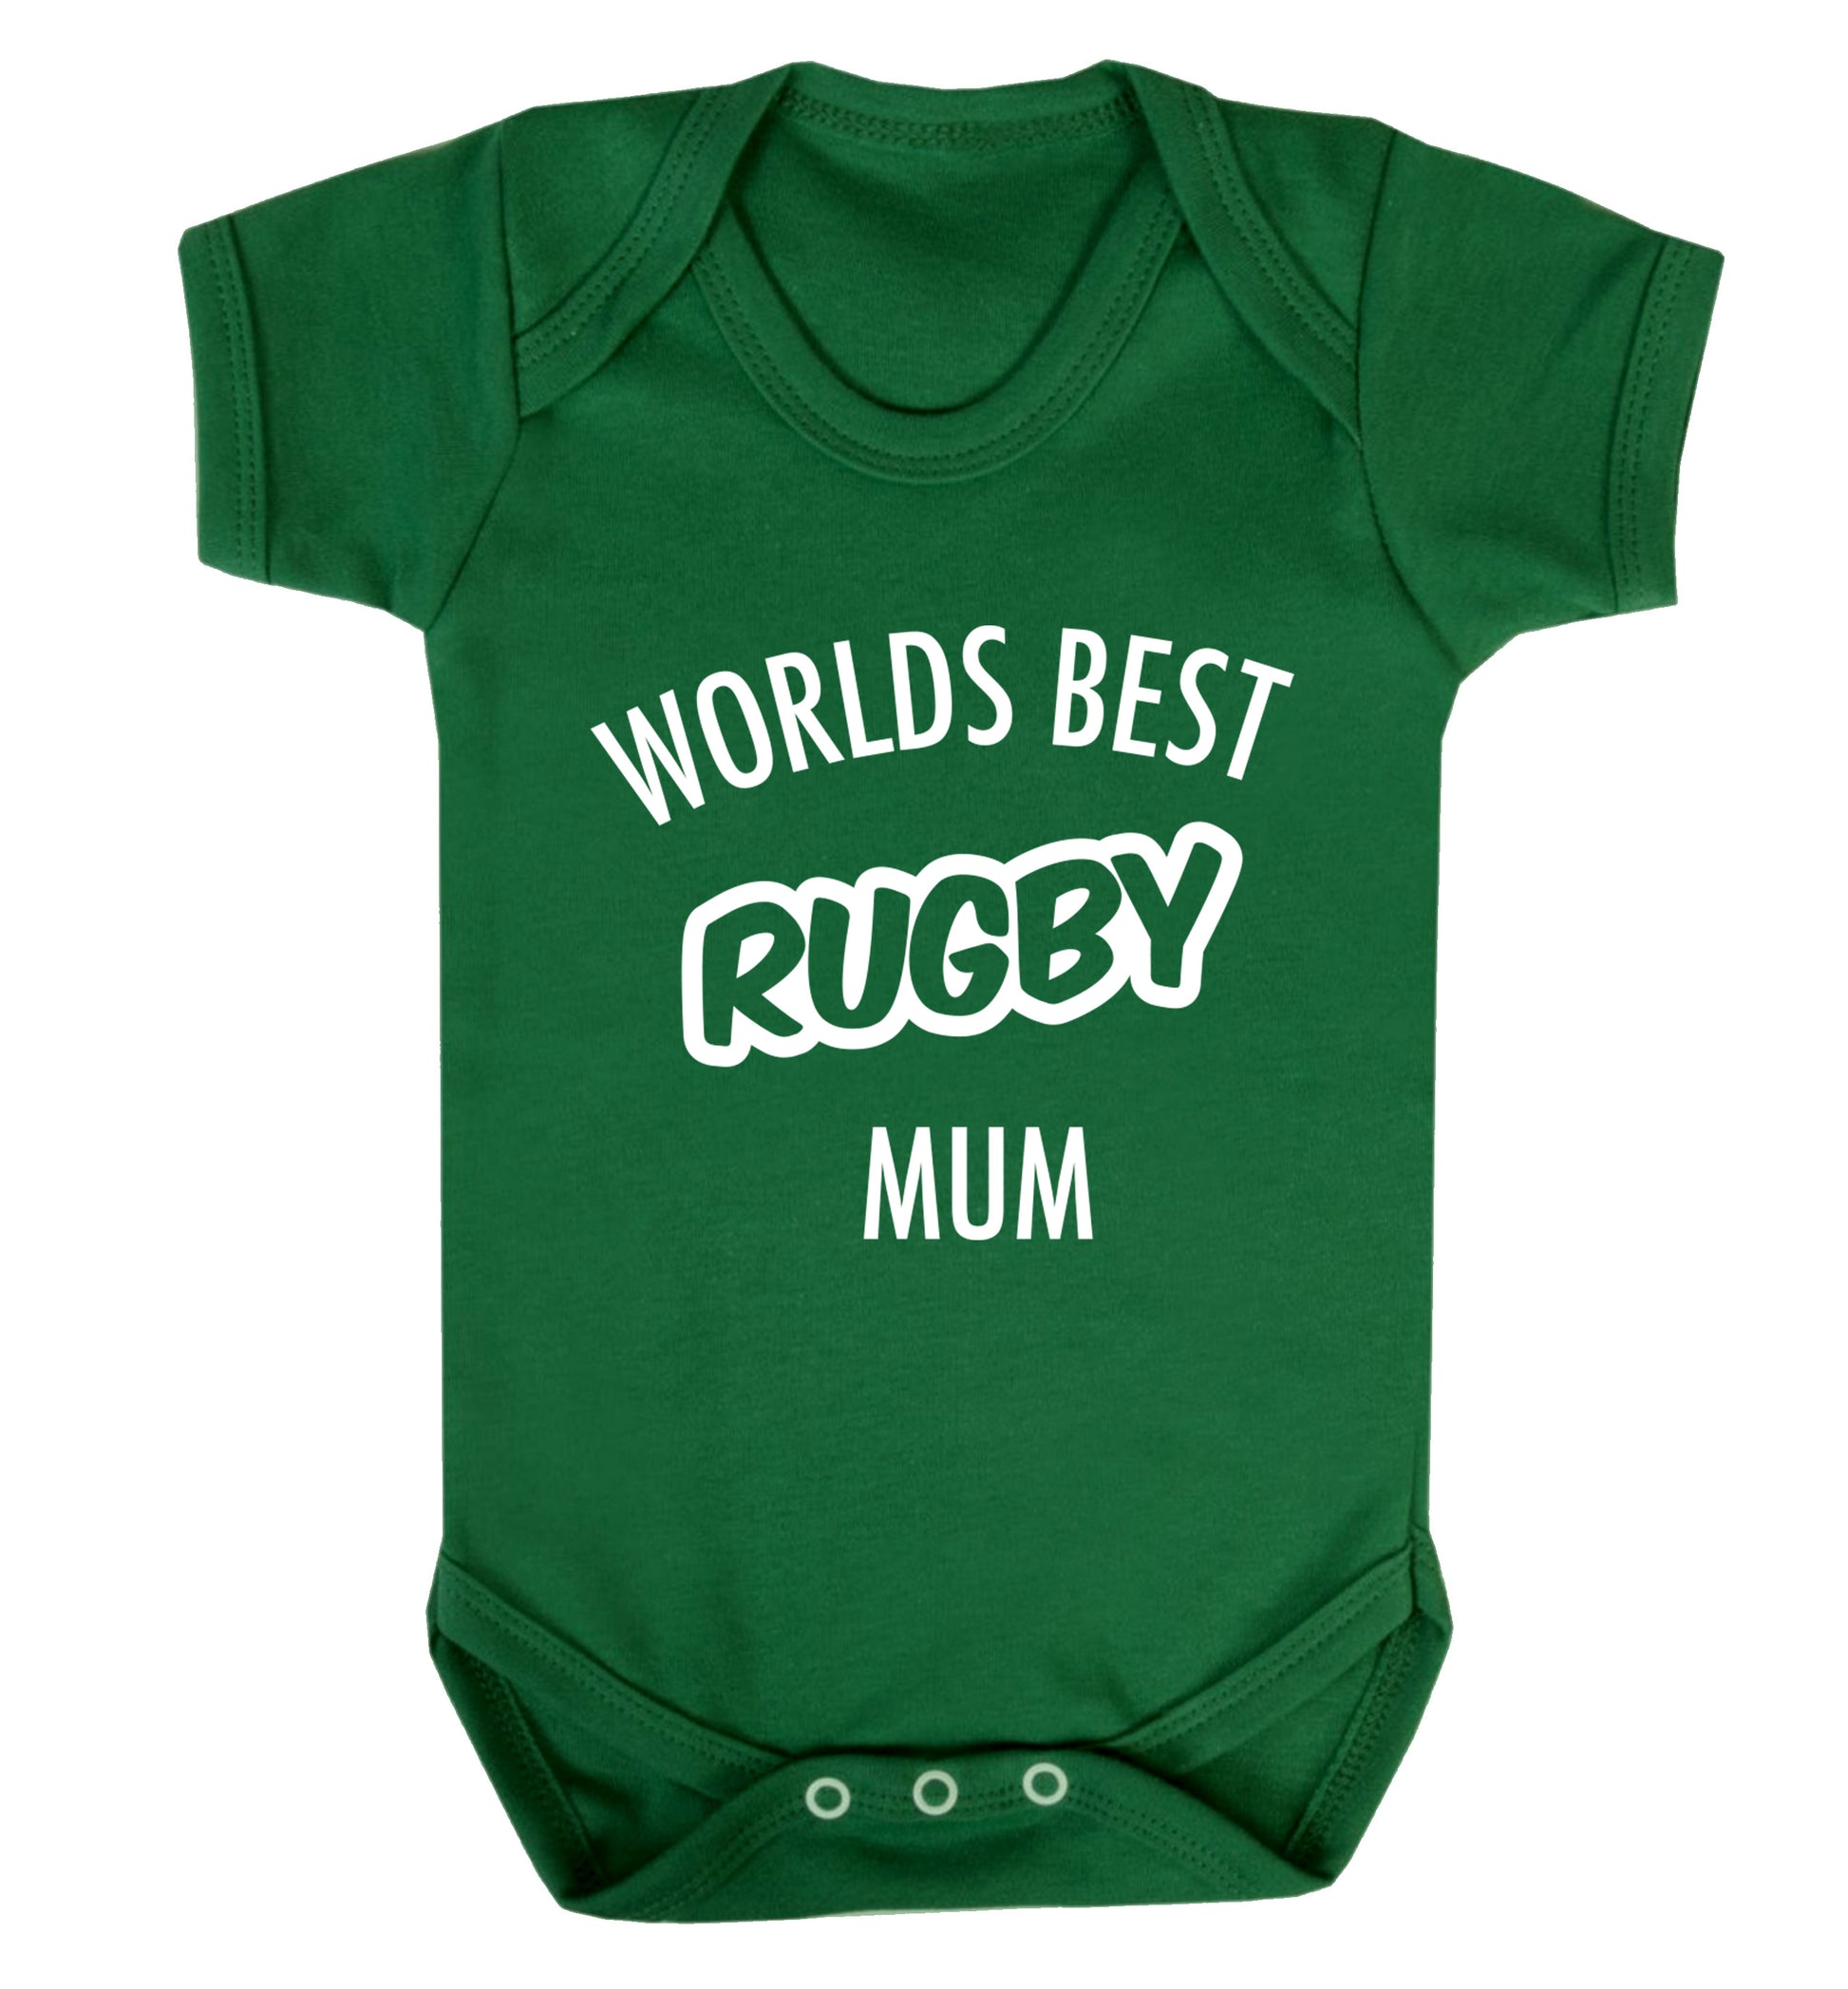 Worlds best rugby mum Baby Vest green 18-24 months